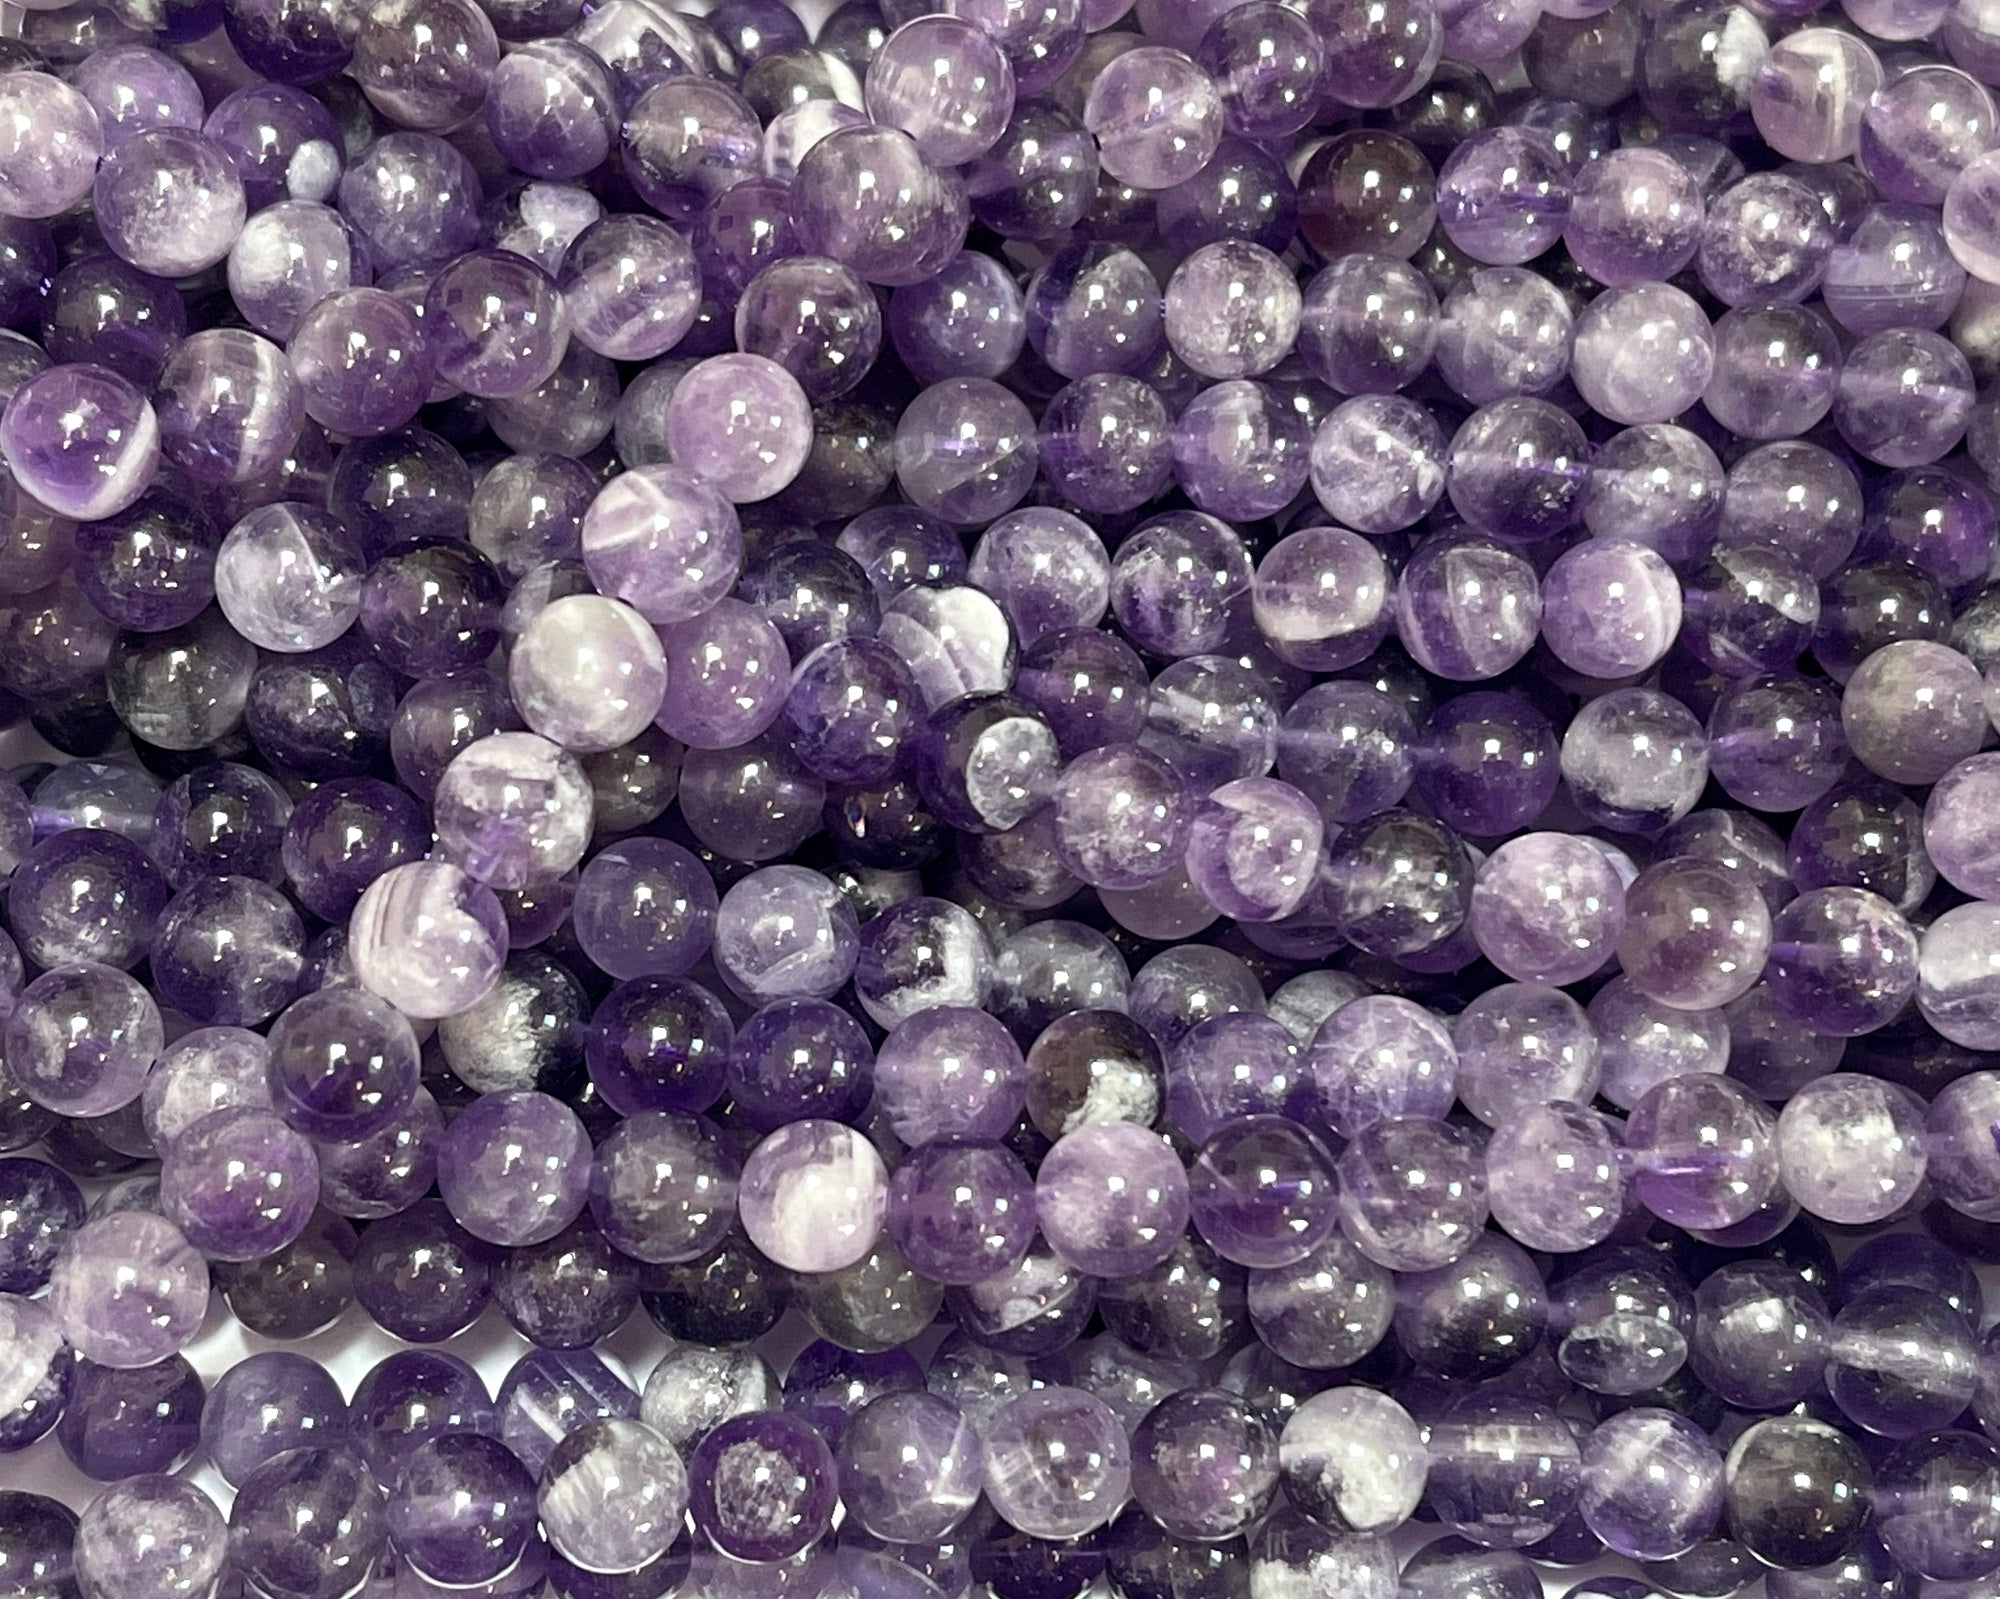 Sage Amethyst 6mm round natural gemstone beads 15" strand